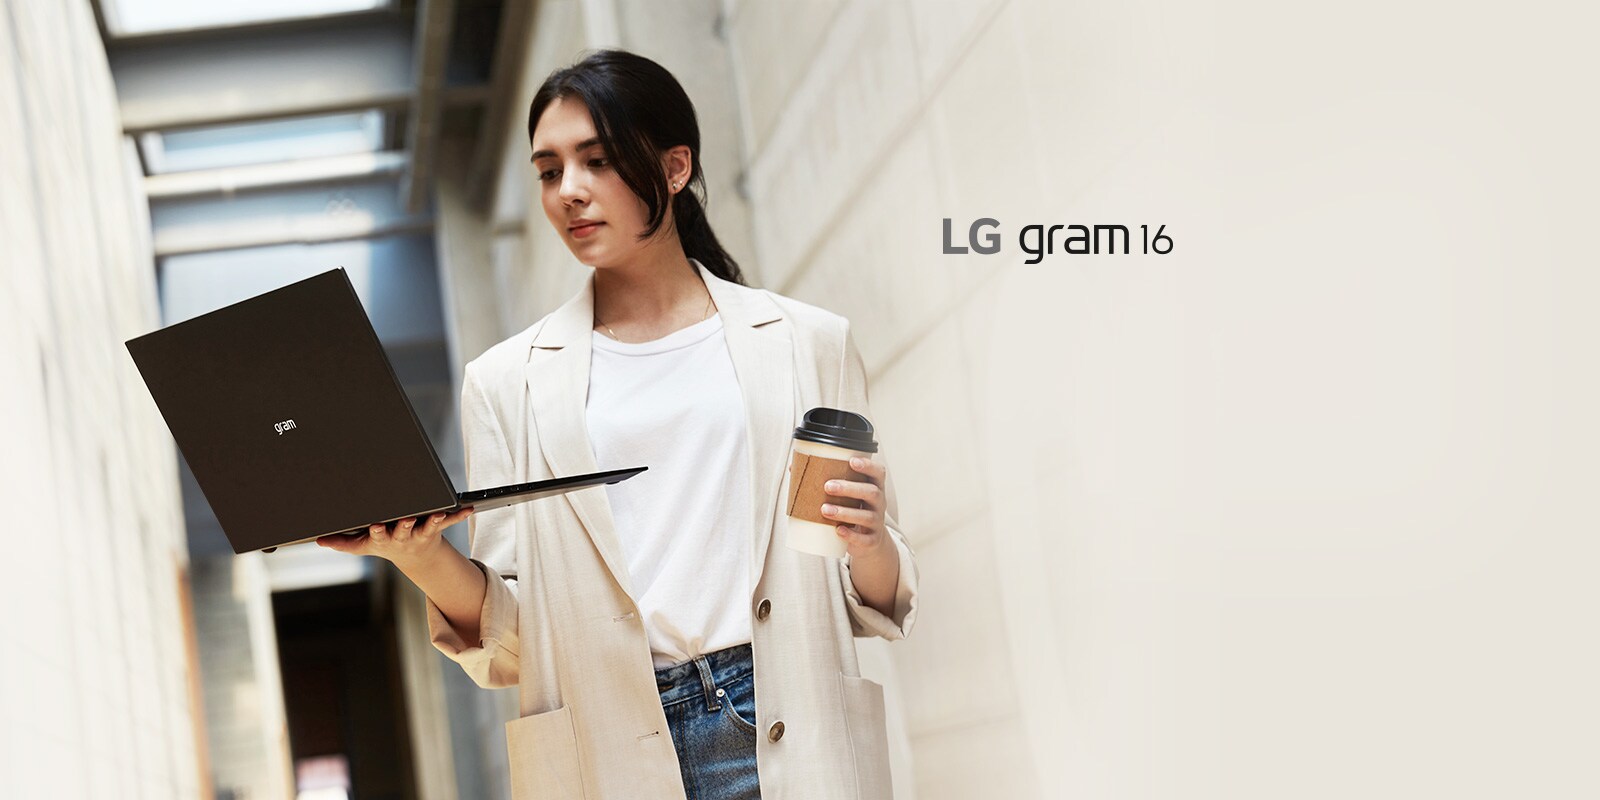 無論您熱愛什麼活動或工作，LG gram 都可以勝任一切；超輕有型，讓您能隨身攜帶。